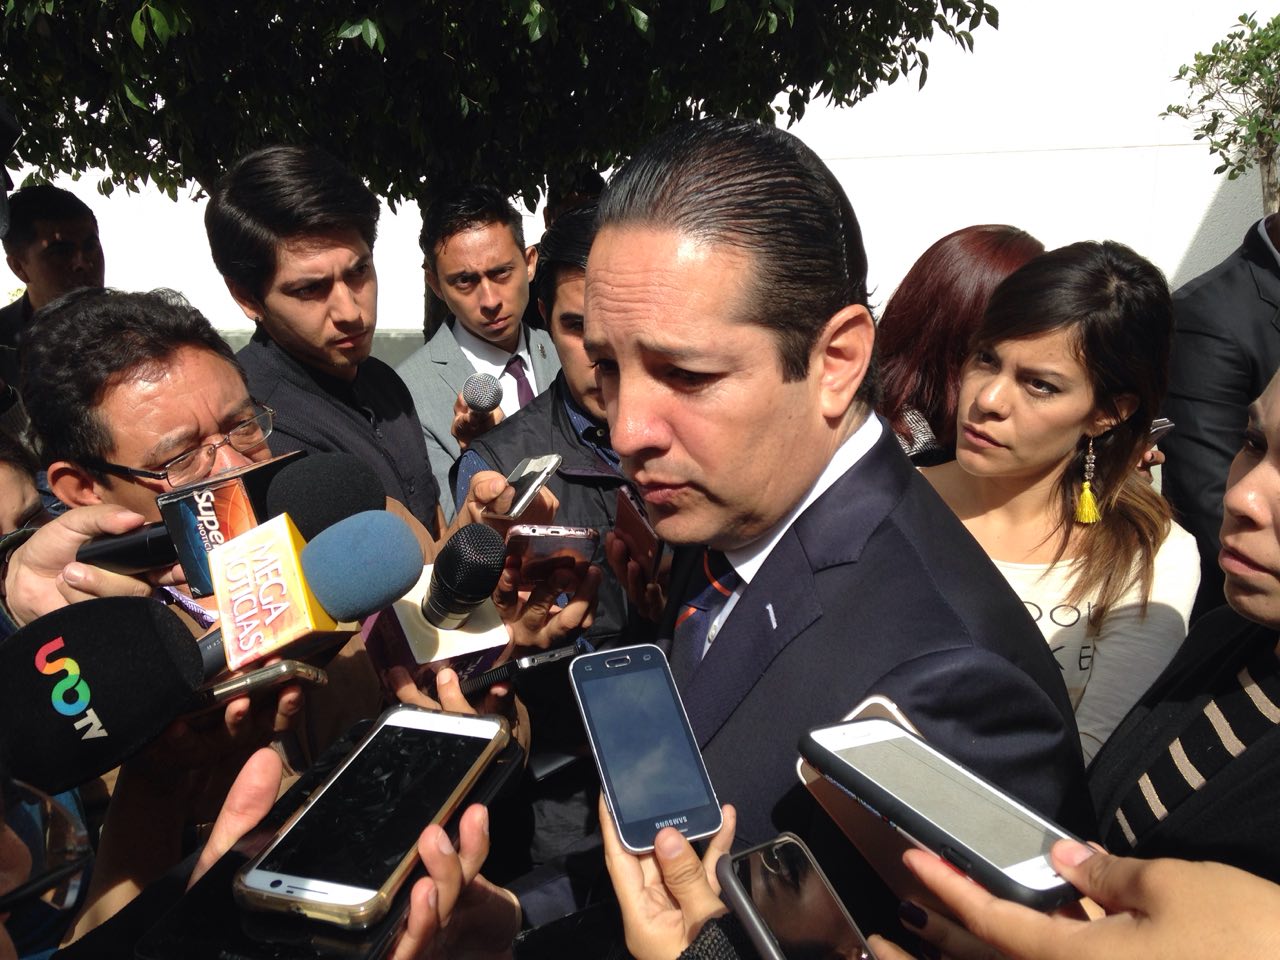  El gobierno de José Calzada “dejó tirado” el tema de seguridad en Querétaro, lamenta Pancho Domínguez